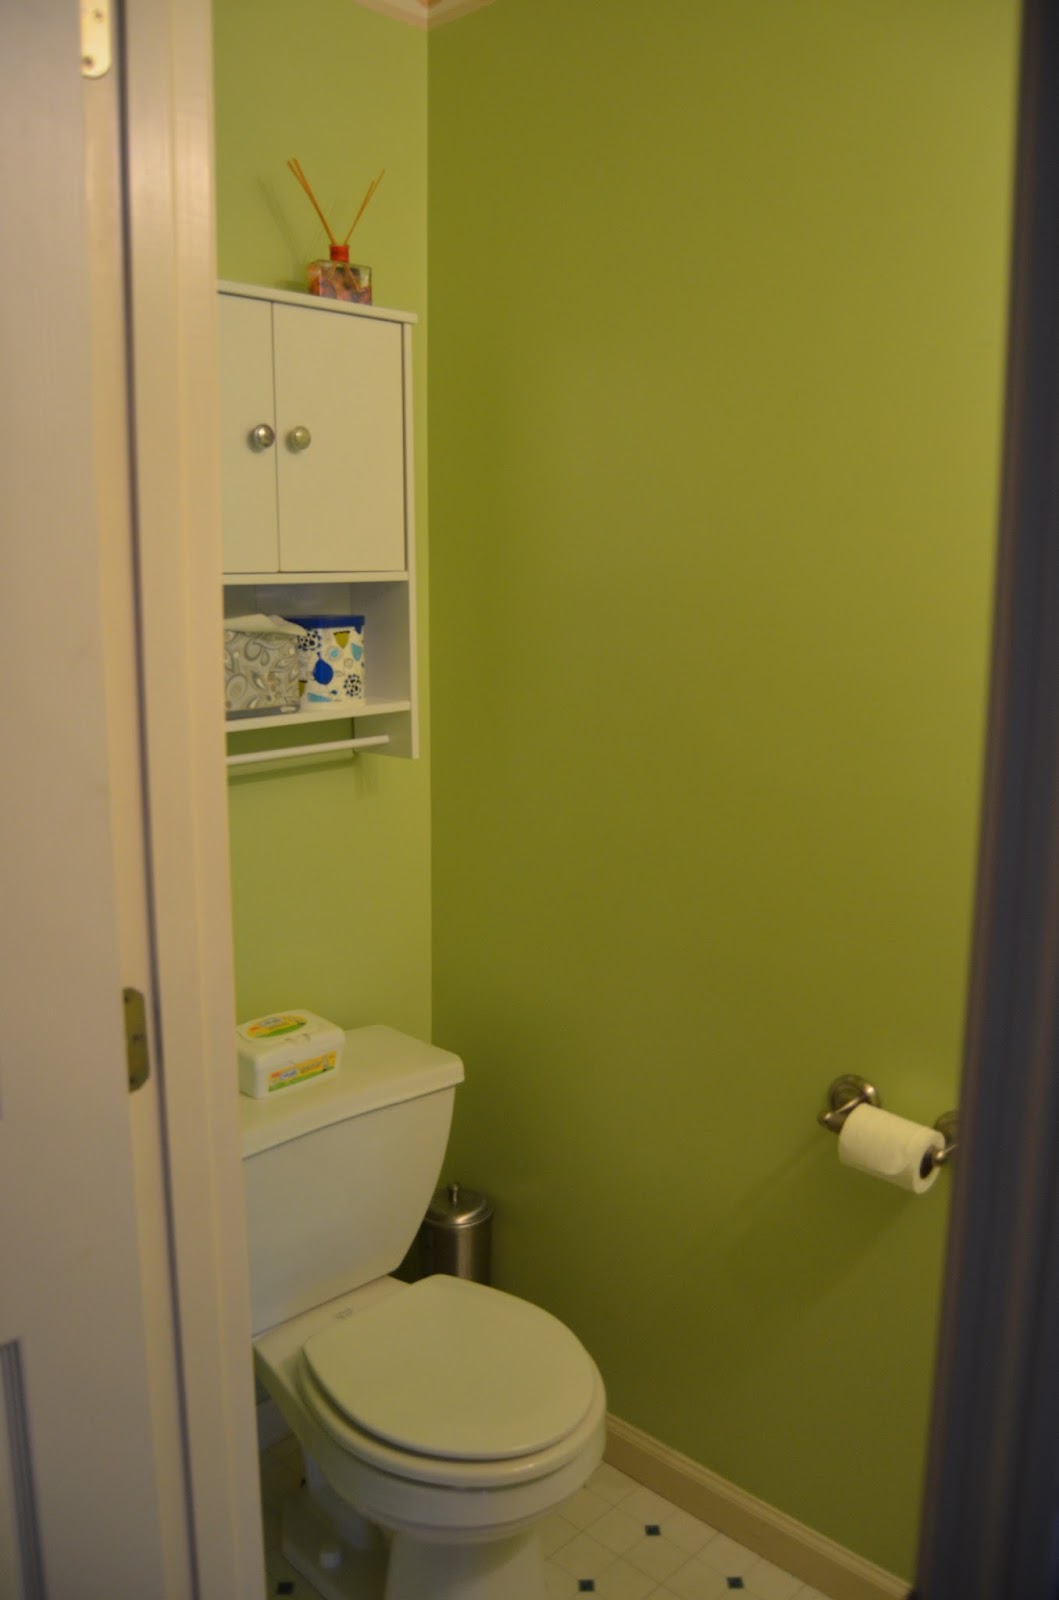 거실 벽지 테두리,화장실,방,특성,화장실,욕실 액세서리